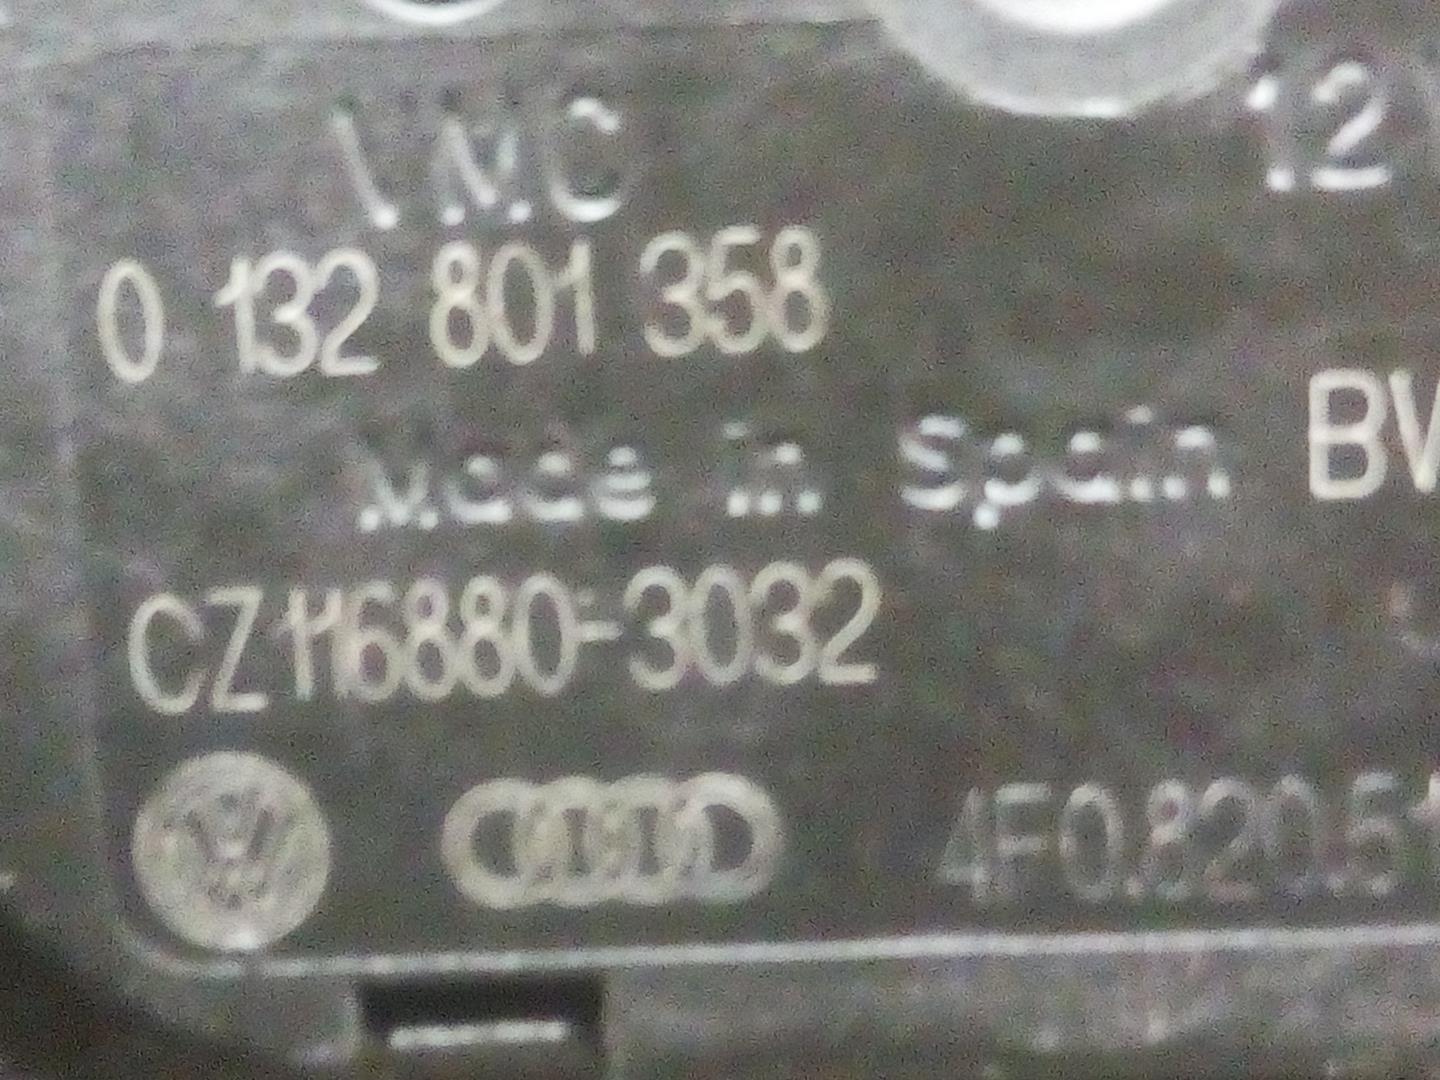 AUDI A6 C6/4F (2004-2011) Heater Blower Fan 0132801358, CZ1168803032 18588109